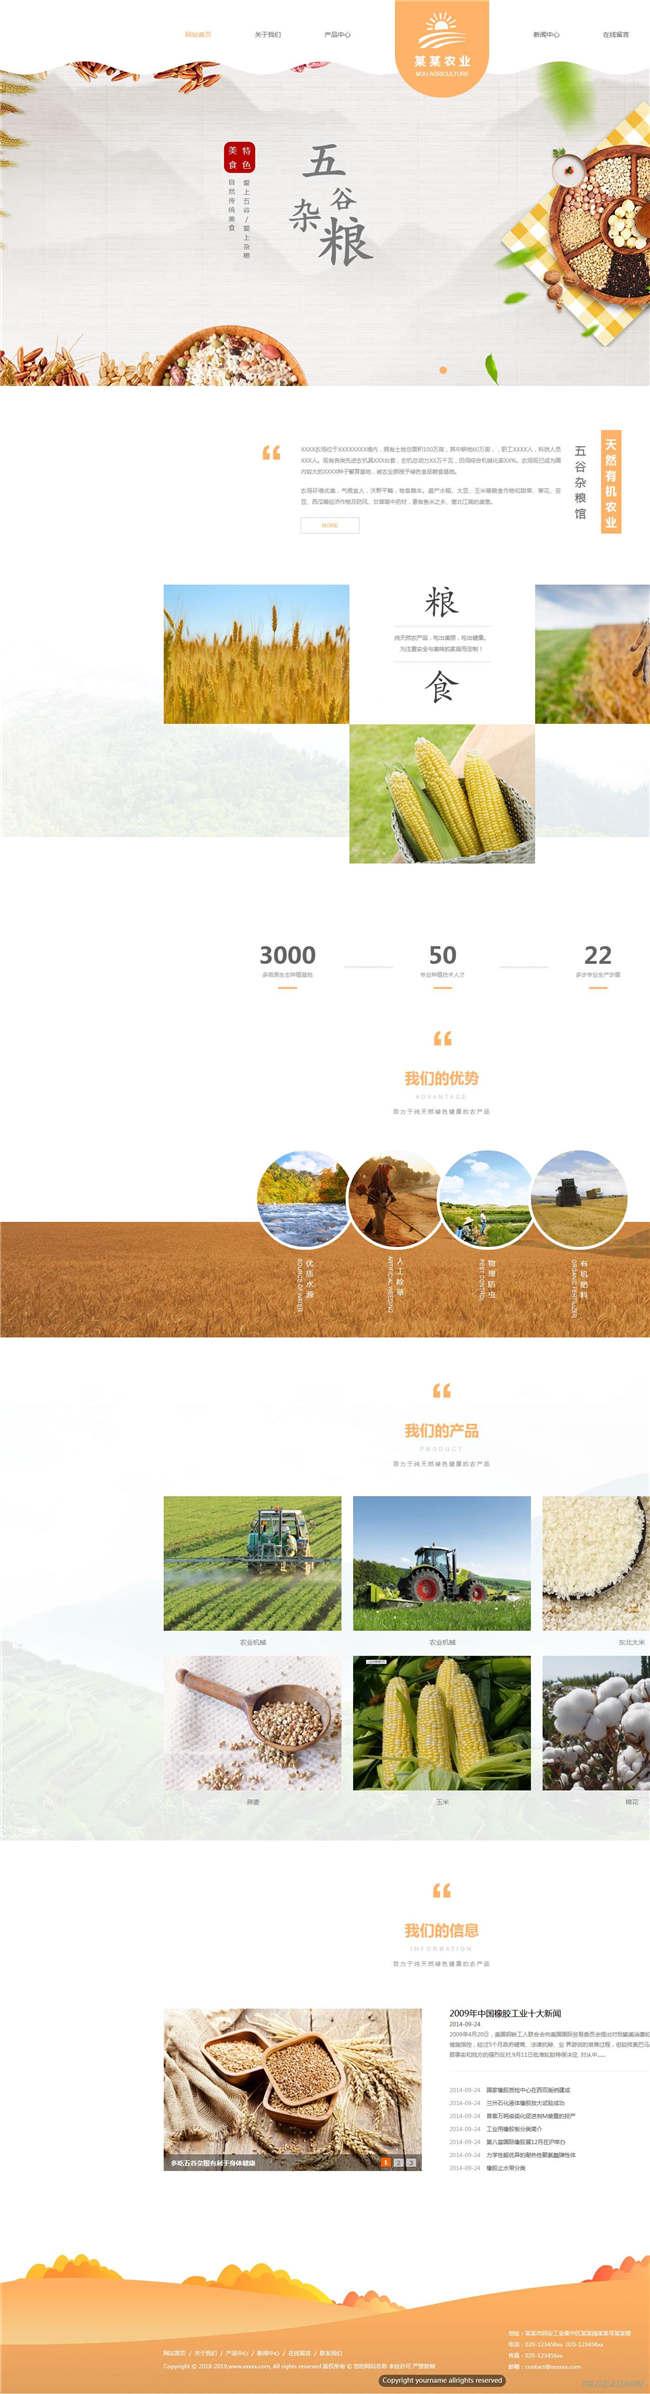 农贸企业农业贸易进出口农产品类网站WordPress主题模板演示图